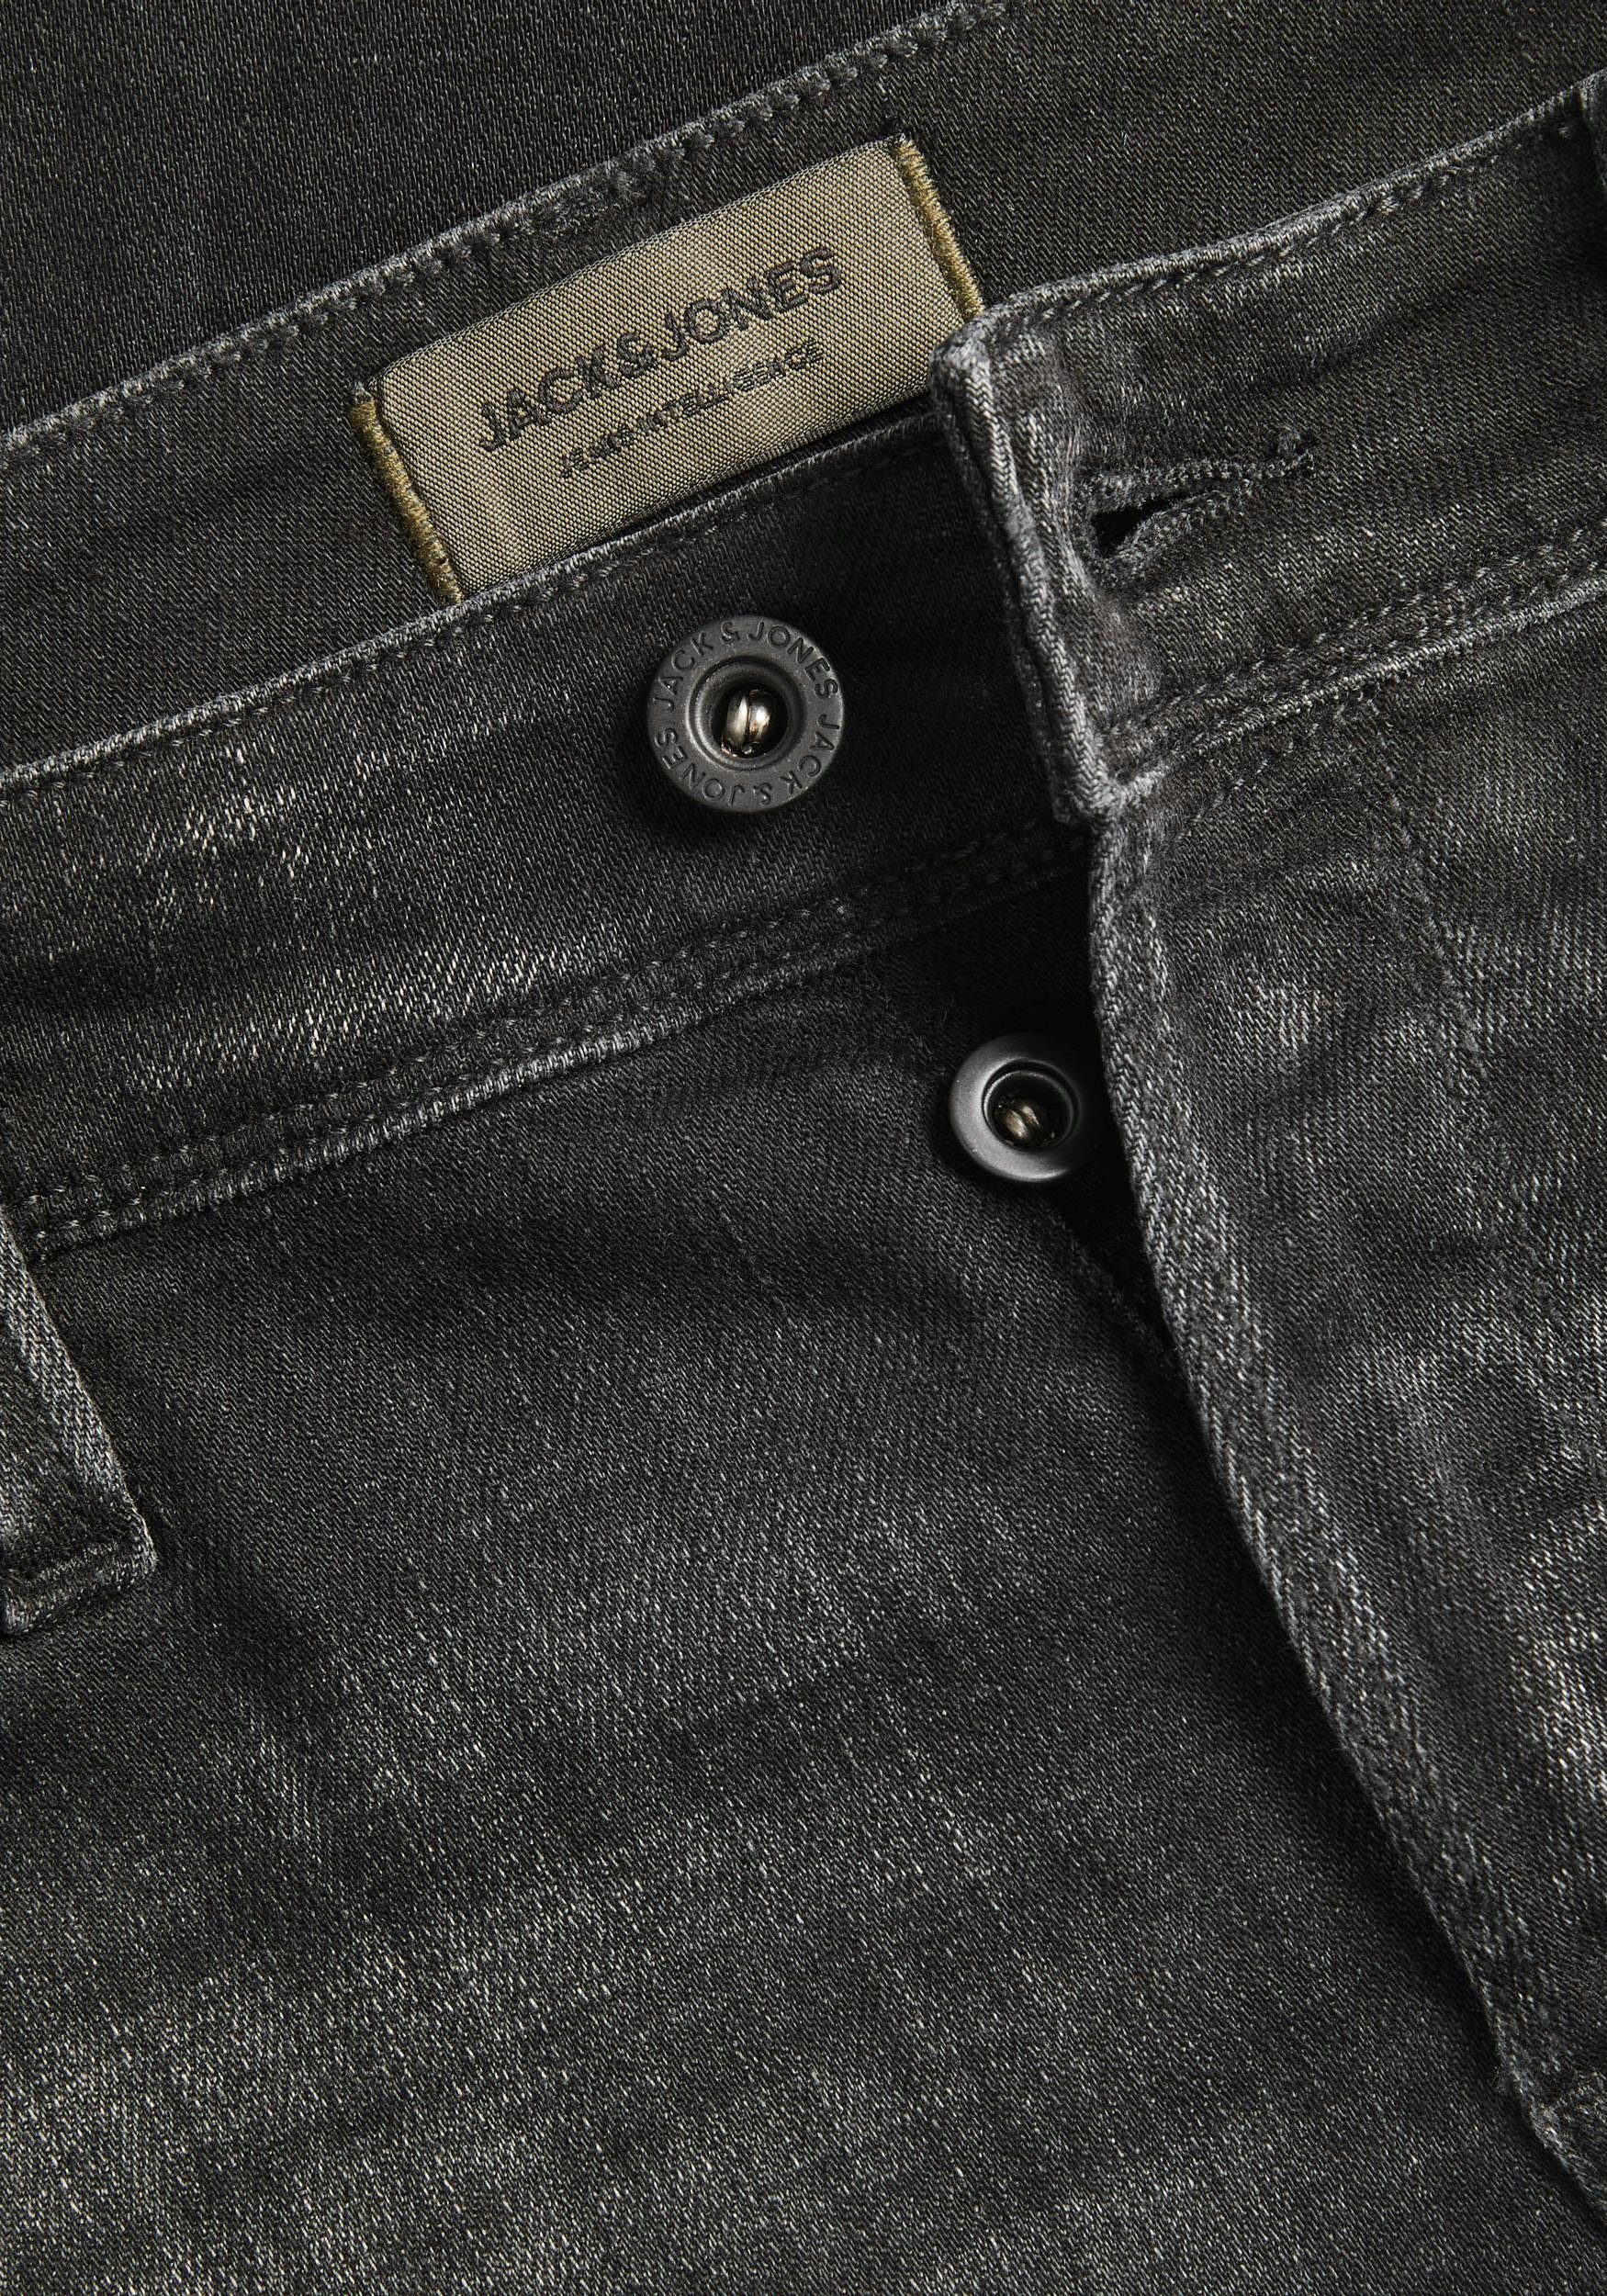 Glenn Jones & Jack black-denim Slim-fit-Jeans